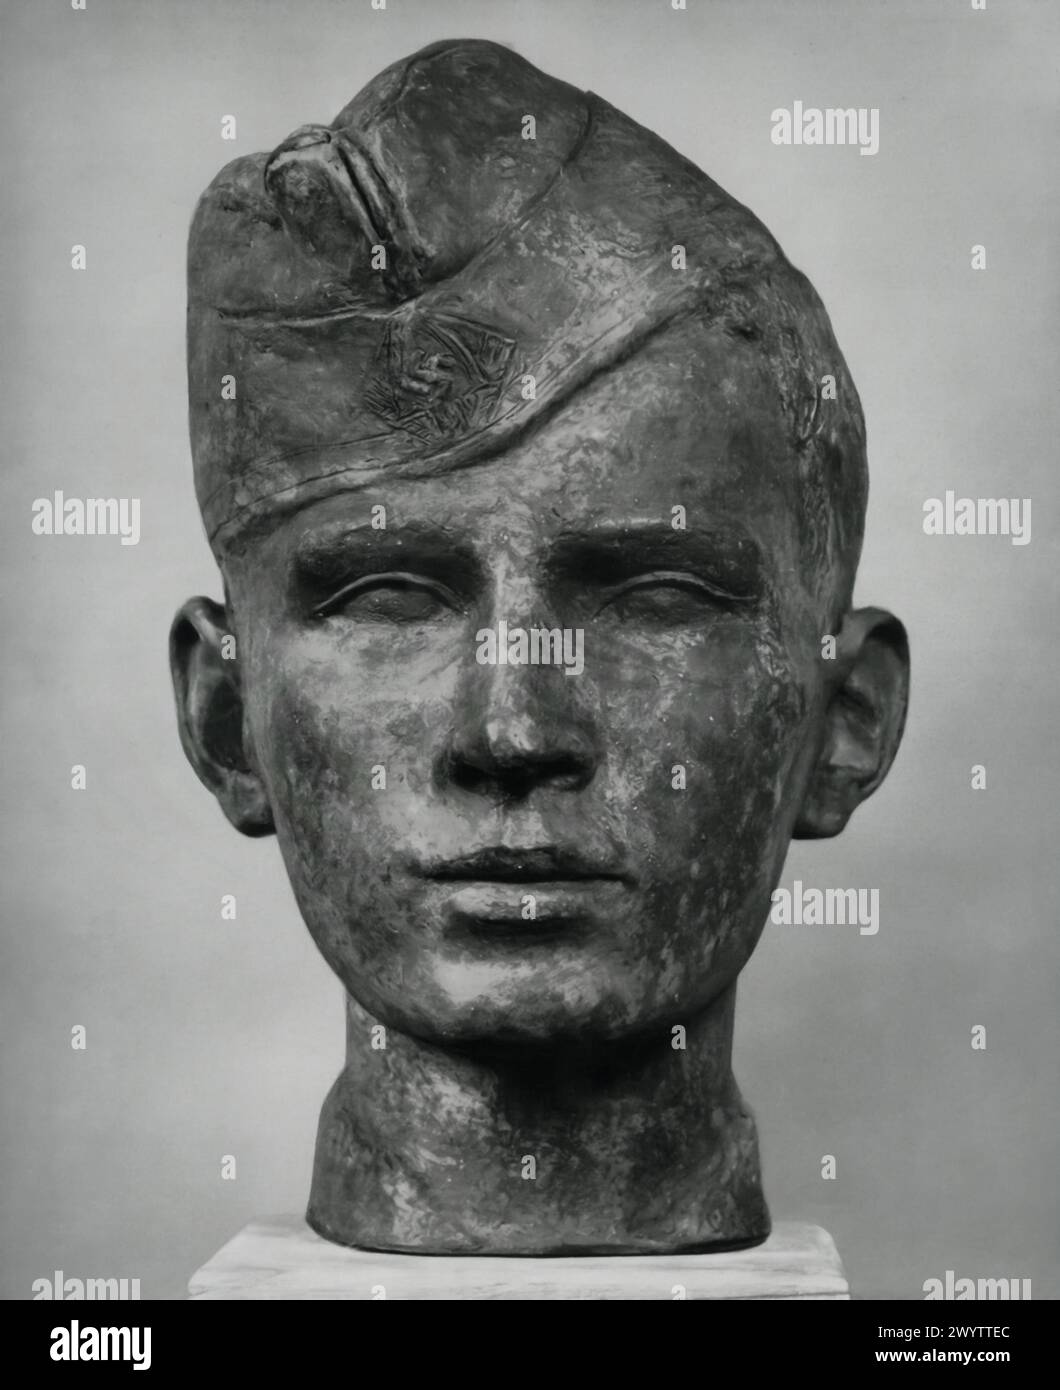 Working Man' de Konrad Richter est un buste sculptural capturant l'essence d'un soldat allemand, se distinguant par son sidecap, un vêtement militaire. Banque D'Images